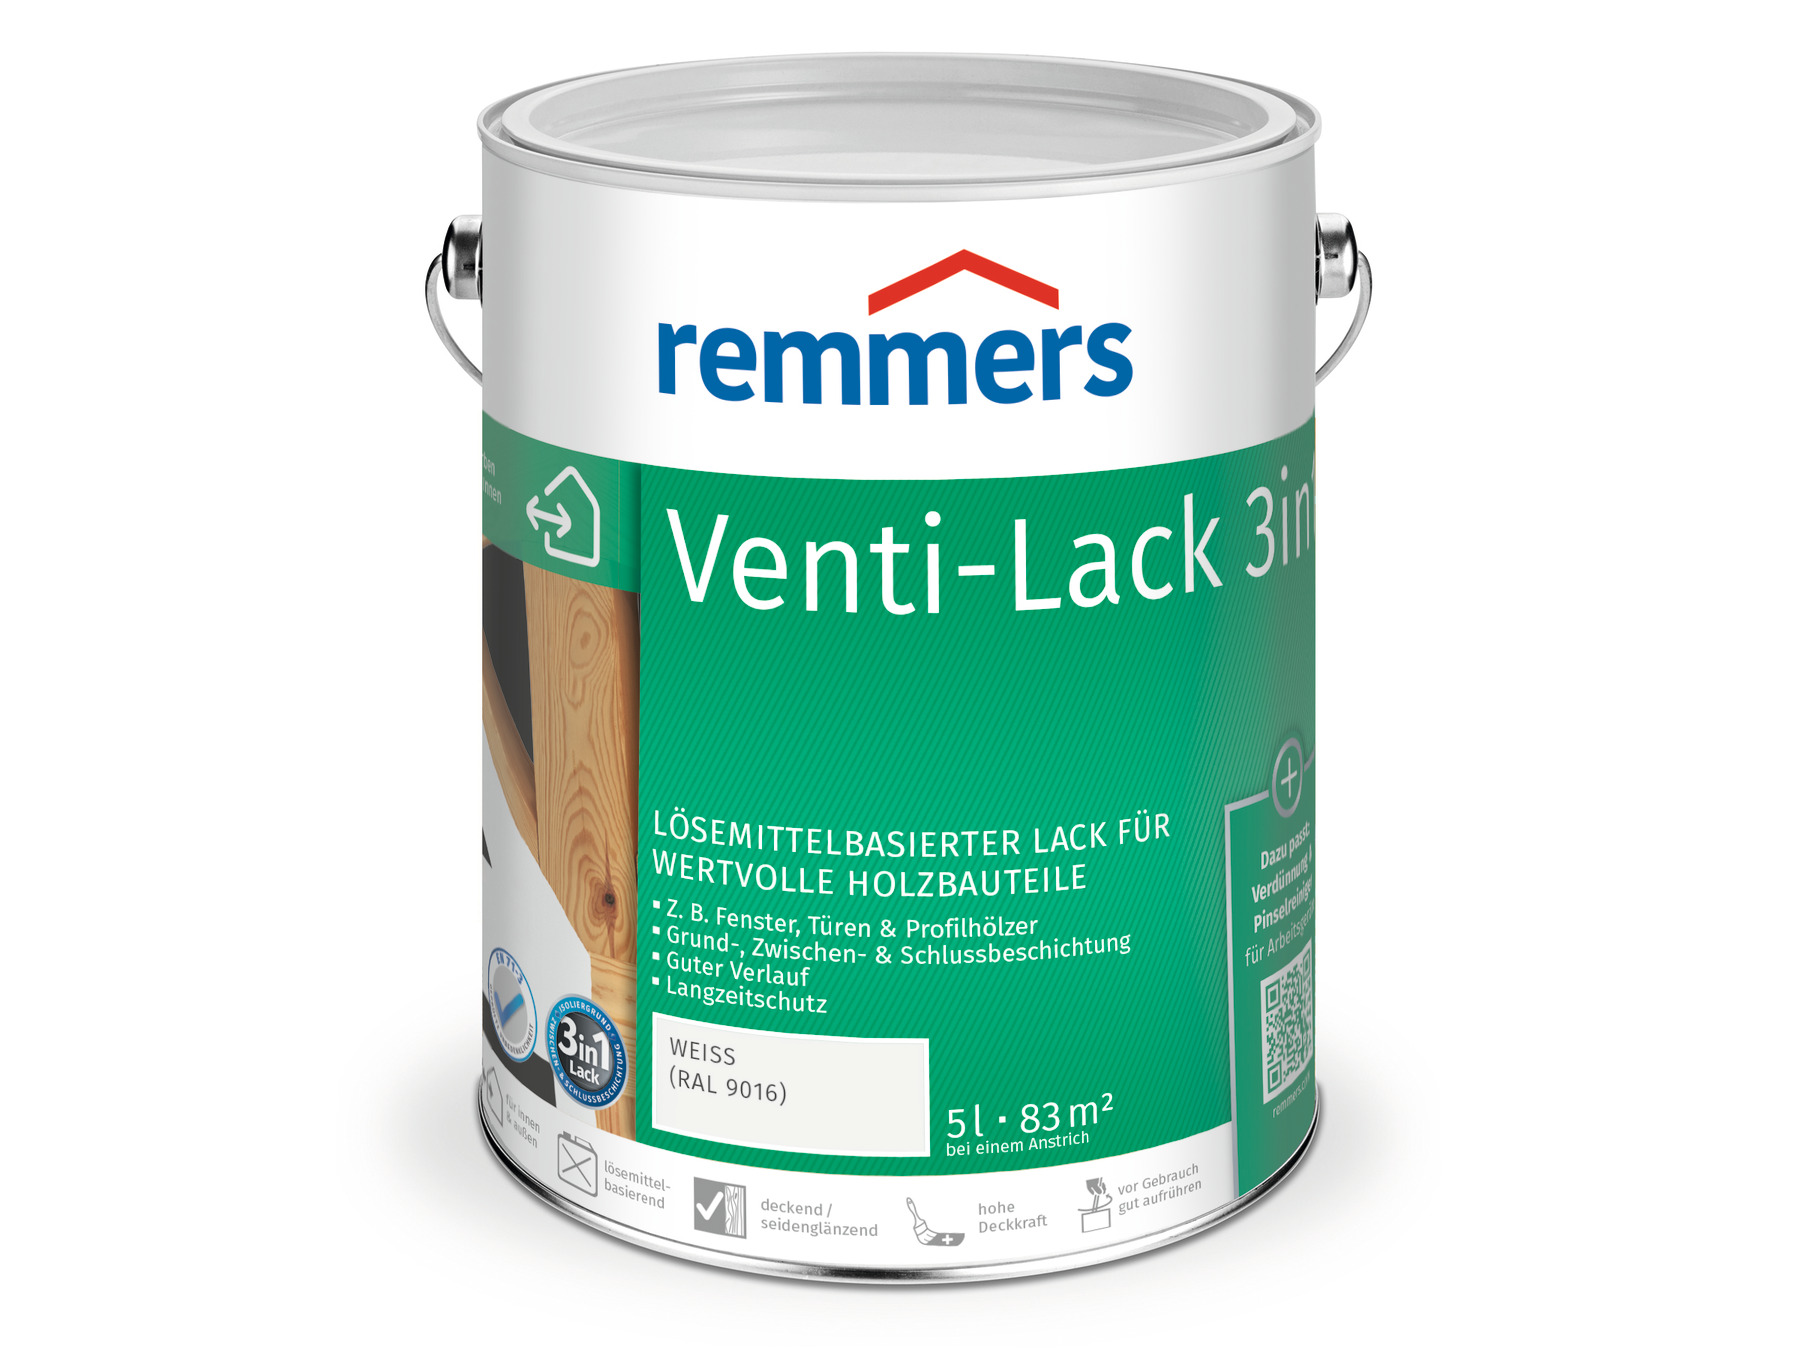 Remmers GmbH Venti-Lack 3in1